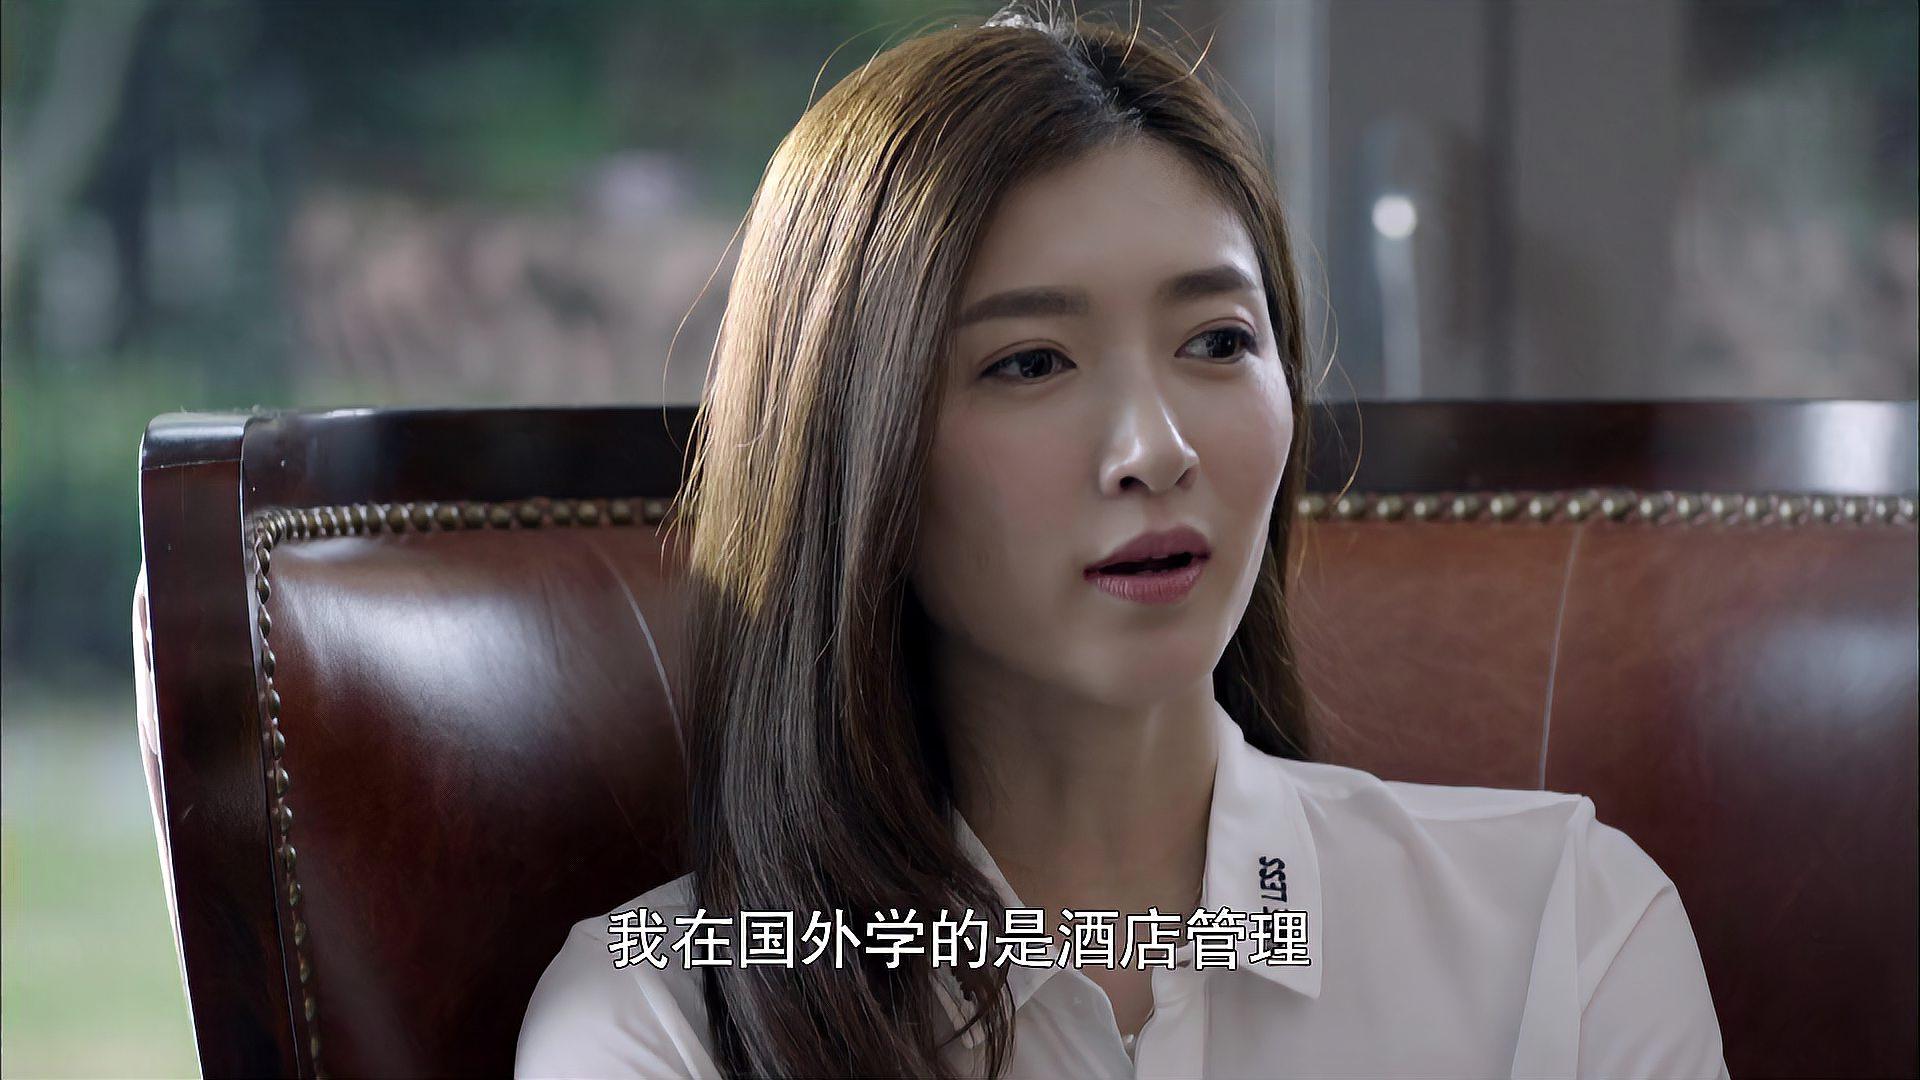 好先生:江疏影接管公司产业,怎料引起王耀庆不满,当场找她对峙